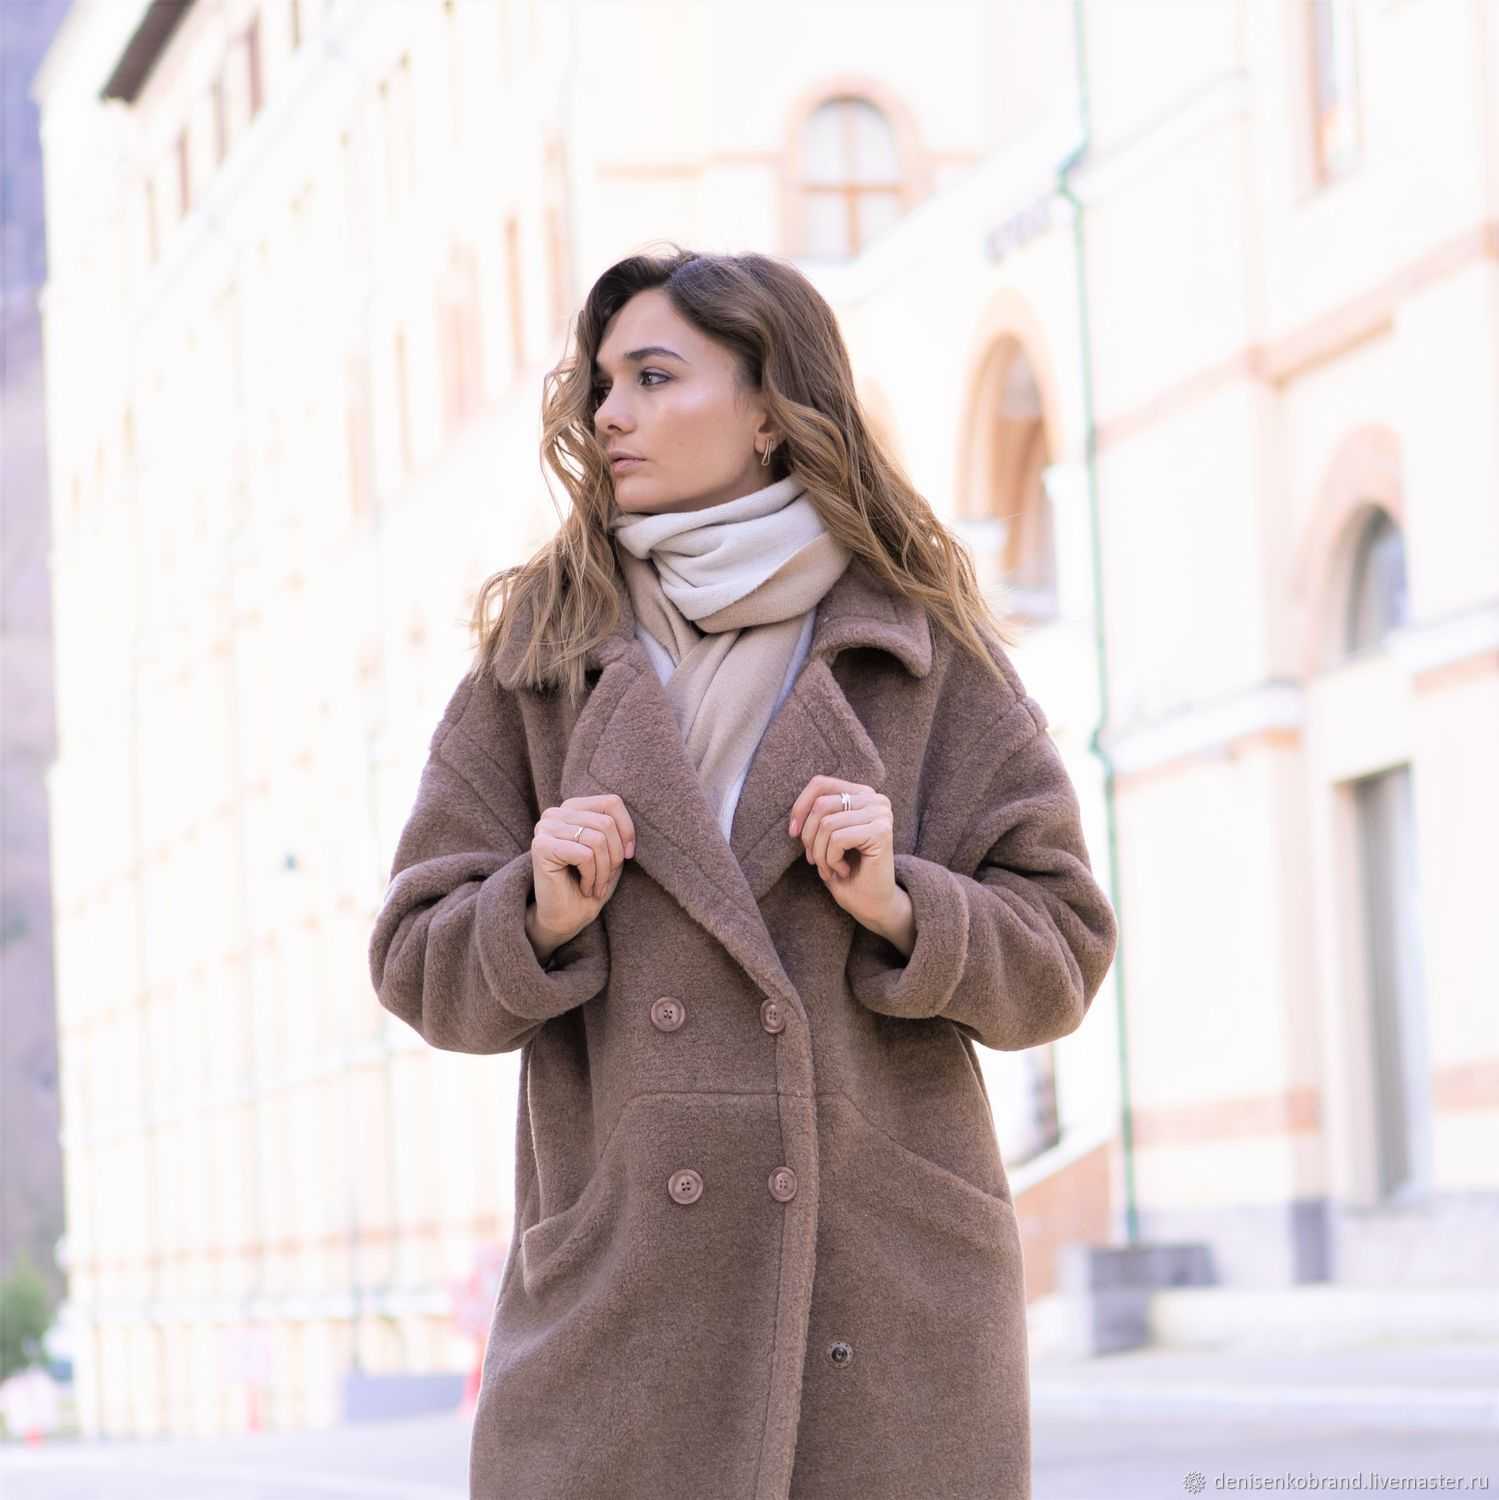 Демисезонное пальто – важная деталь гардероба современной женщины весной и осенью Хотите знать, как правильно выбрать эту вещь по фигуре Какие бывают модели и фасоны Выбираем длину, материалы и бренд